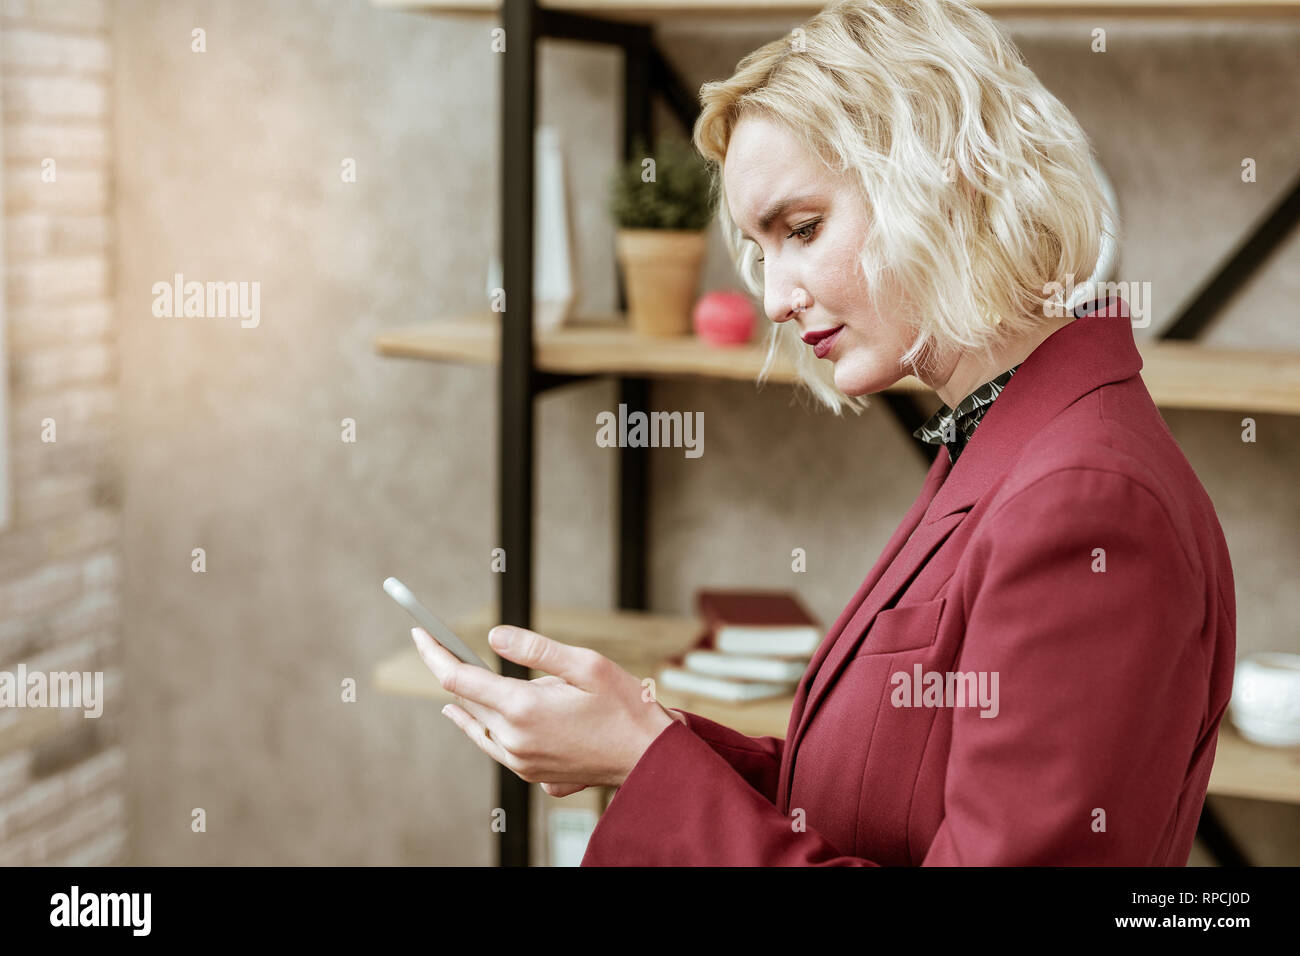 Ernsthafte blonde Frau starrte der Bildschirm des Smartphones Stockfoto